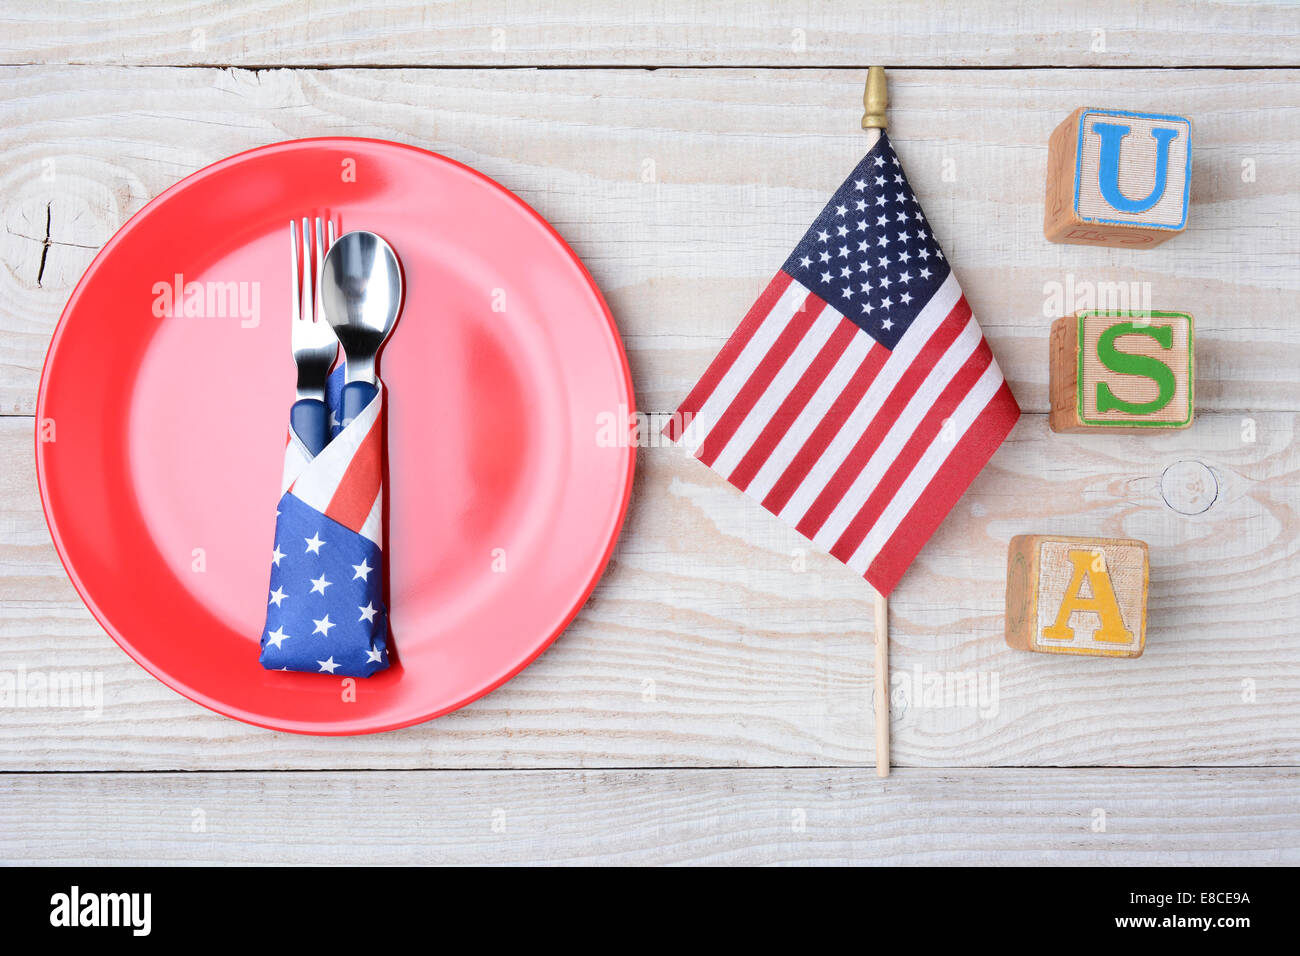 Ein Picknick-Tisch für ein 4. Juli Picknick bereit. Eine rote Platte mit Gabel und Löffel, amerikanische Flagge und Blöcke, die Rechtschreibung aus USA. Stockfoto